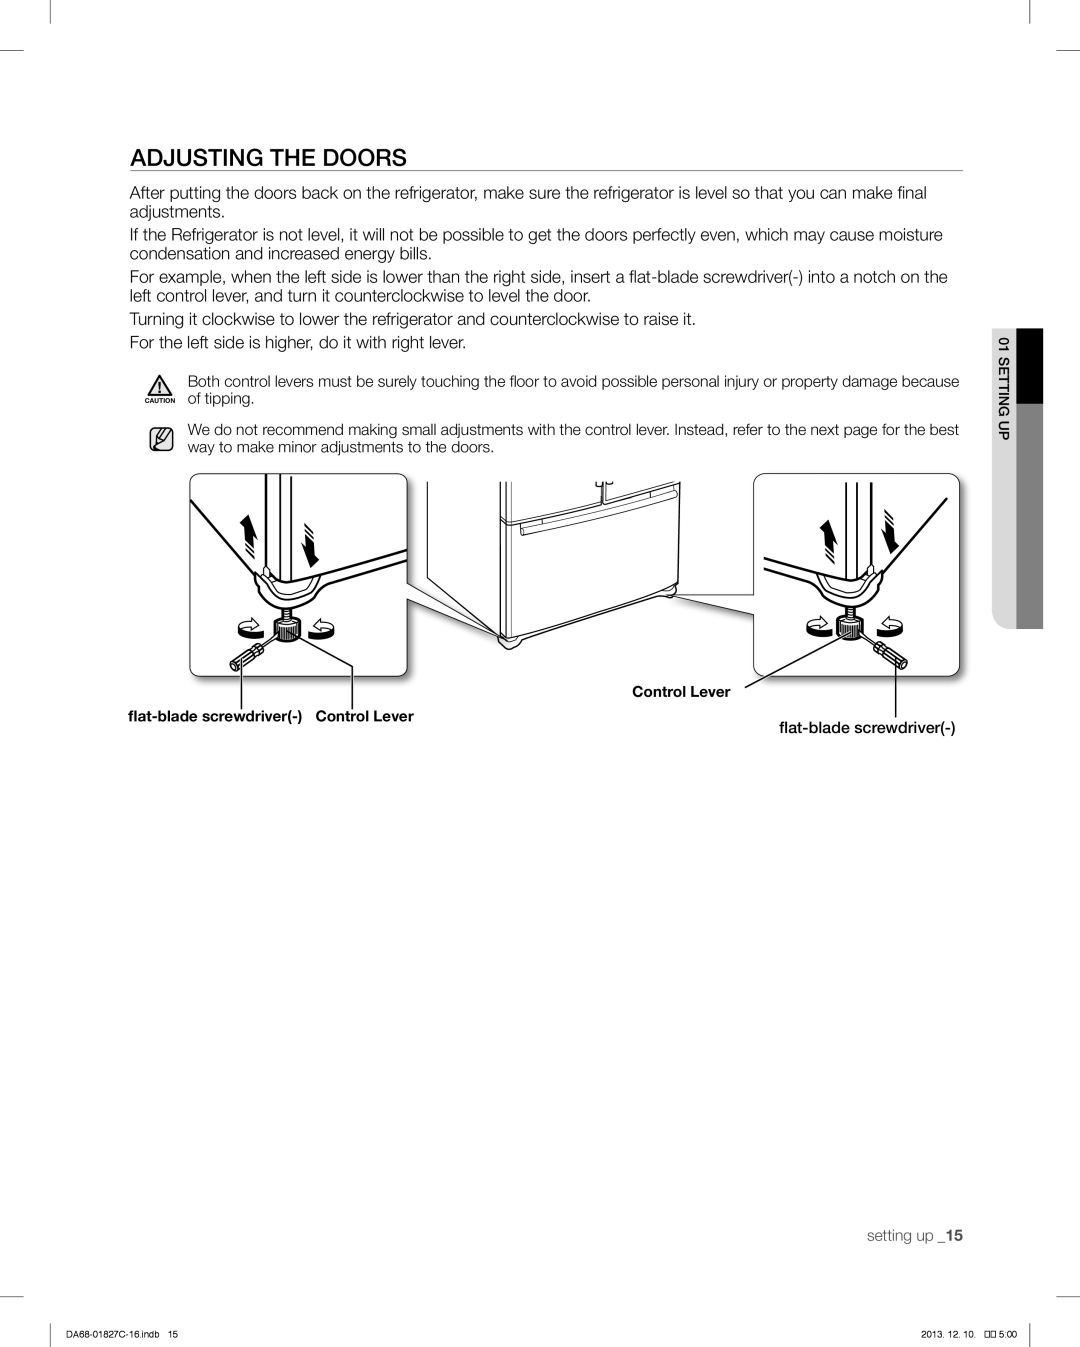 Samsung RFG237AARS user manual Adjusting The Doors, flat-blade screwdriver 